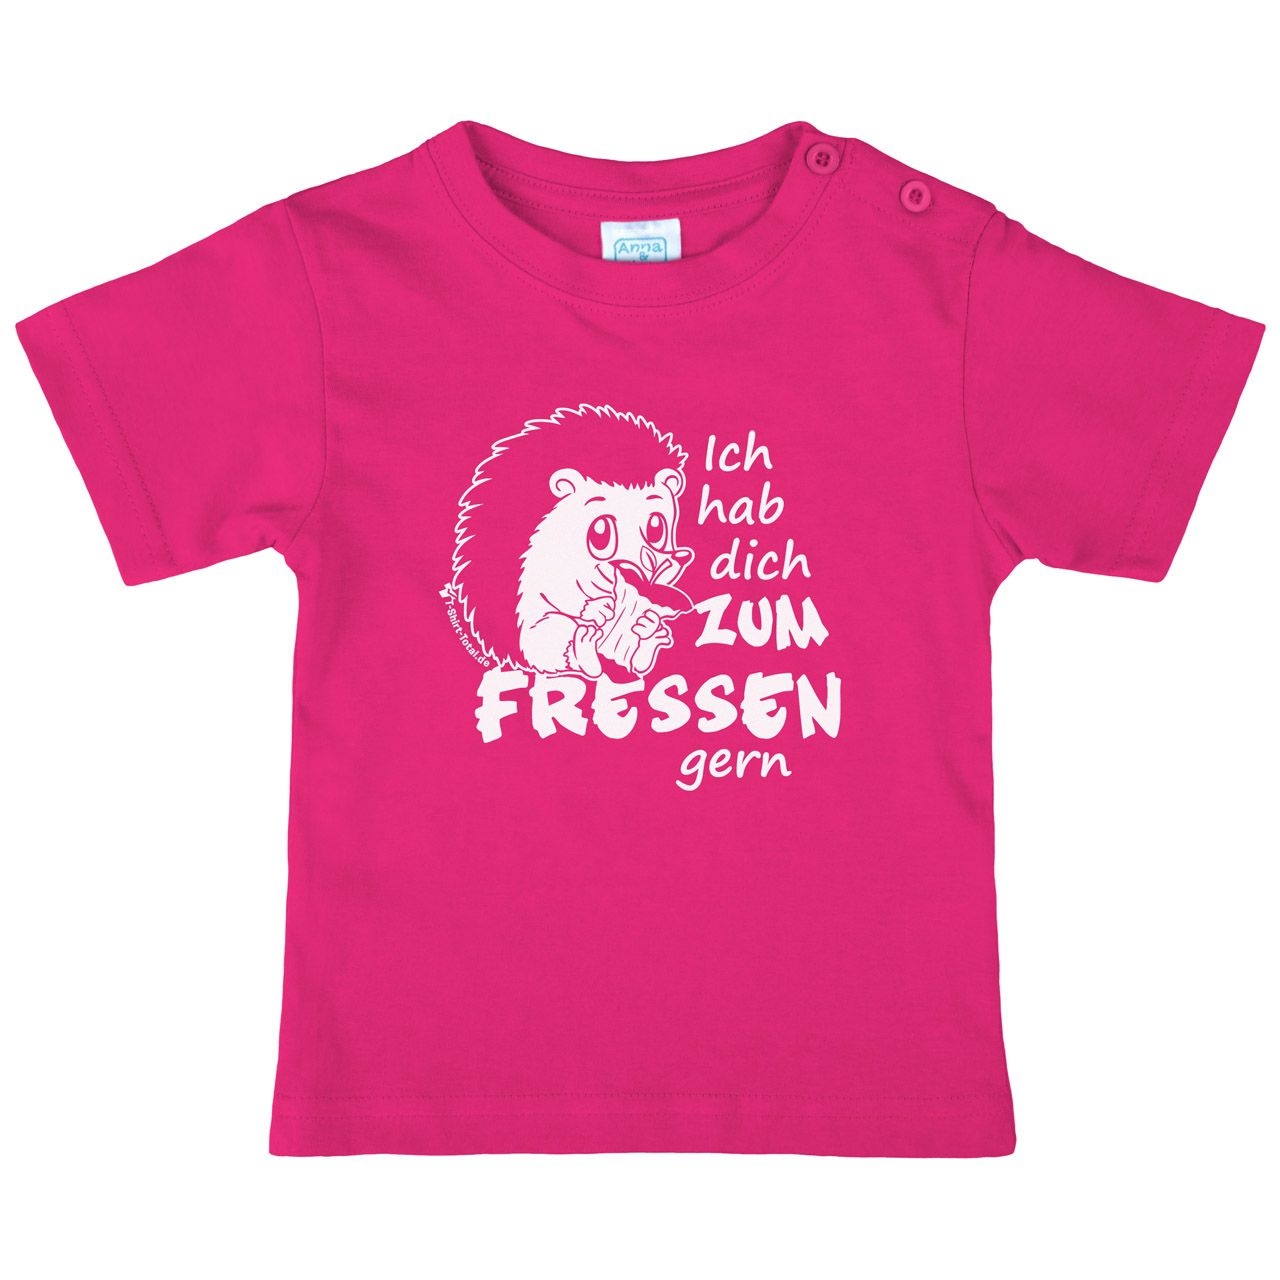 Zum fressen gern Kinder T-Shirt pink 80 / 86